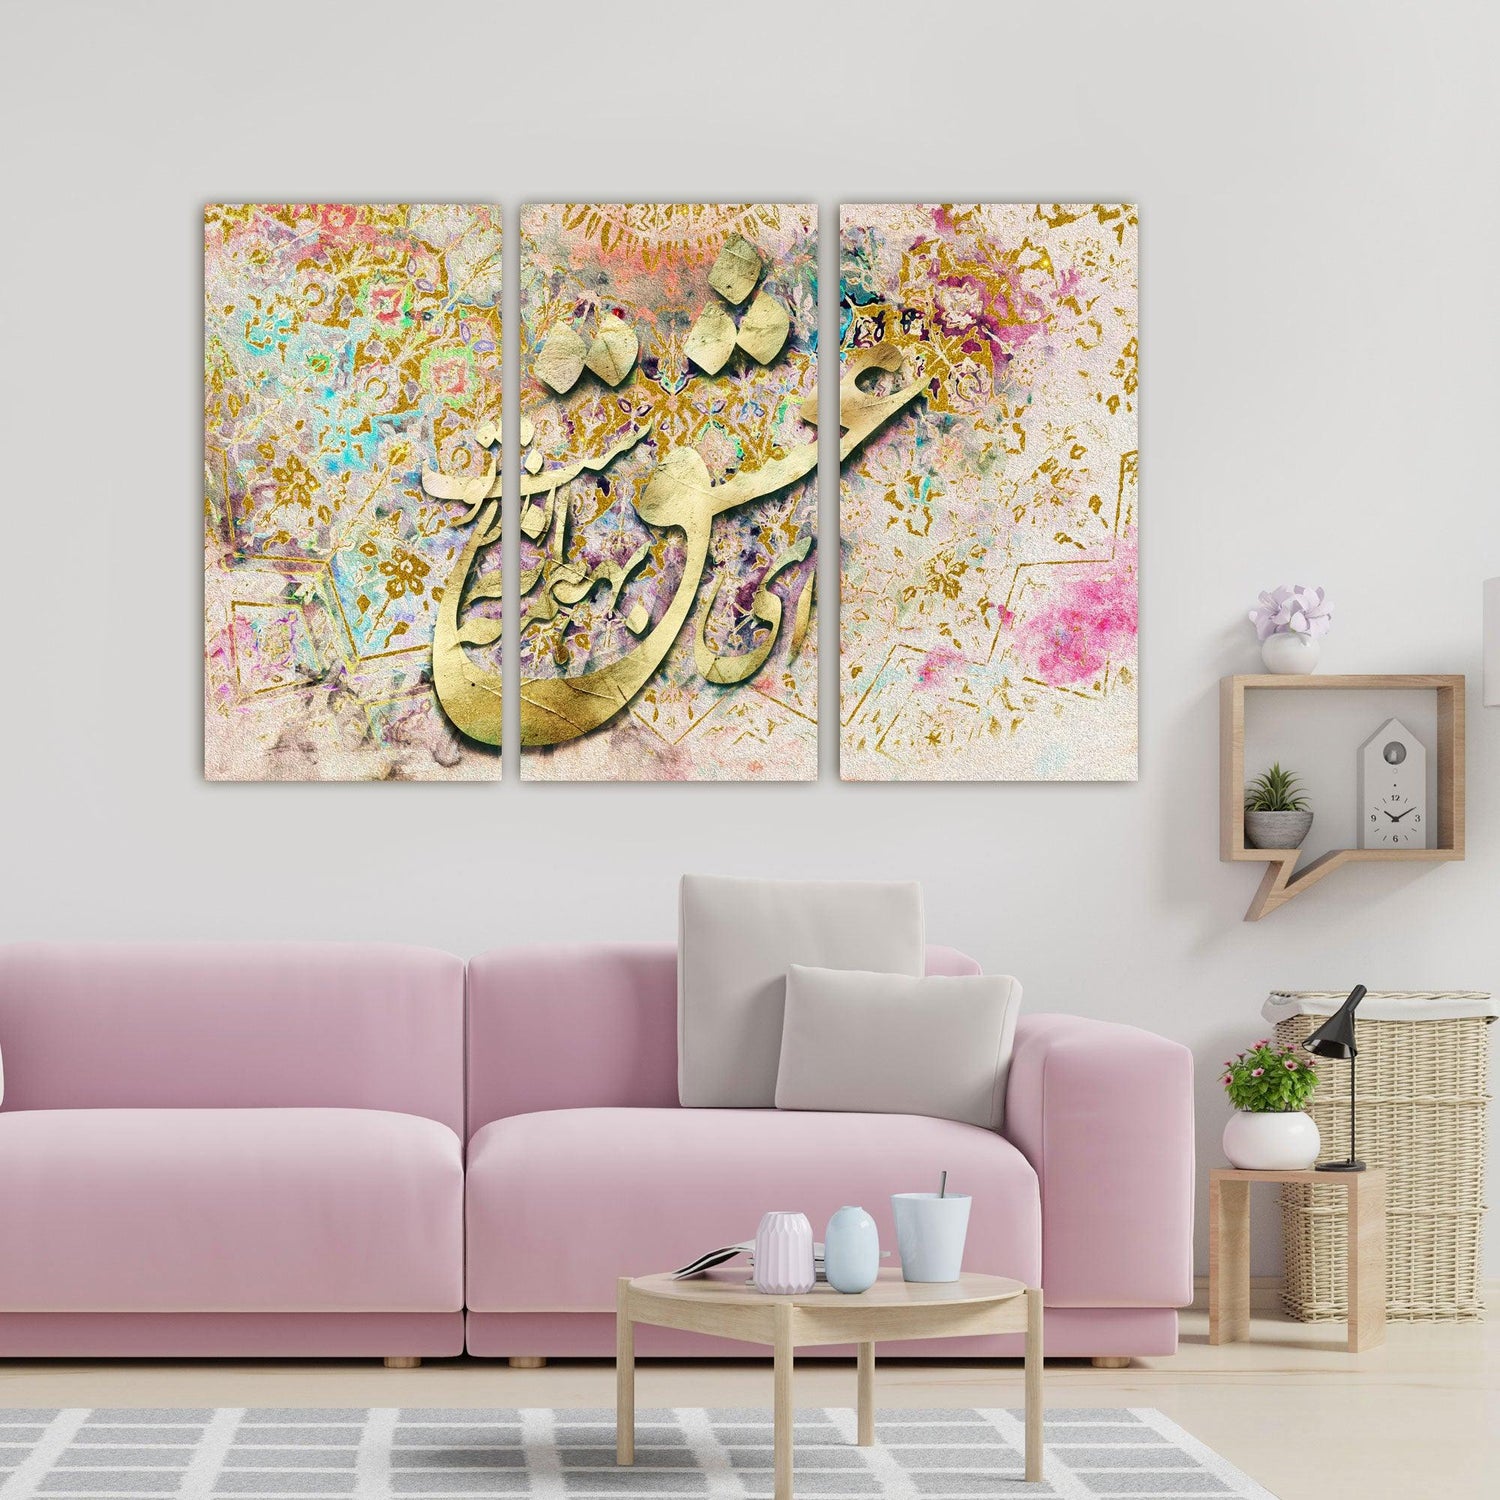 ای عشق همه بهانه از توست - Persian Calligraphy Wall art decor